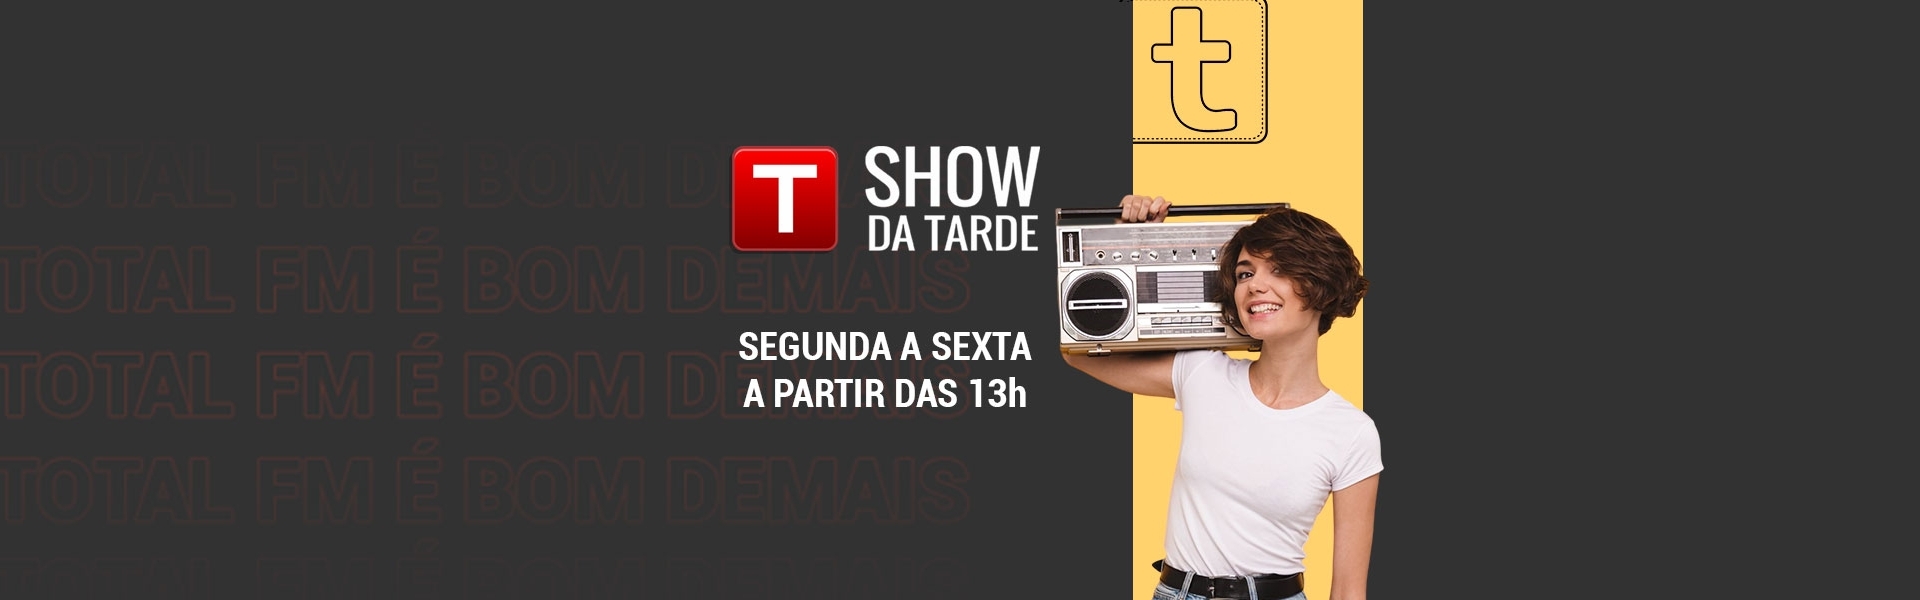 Show da Tarde